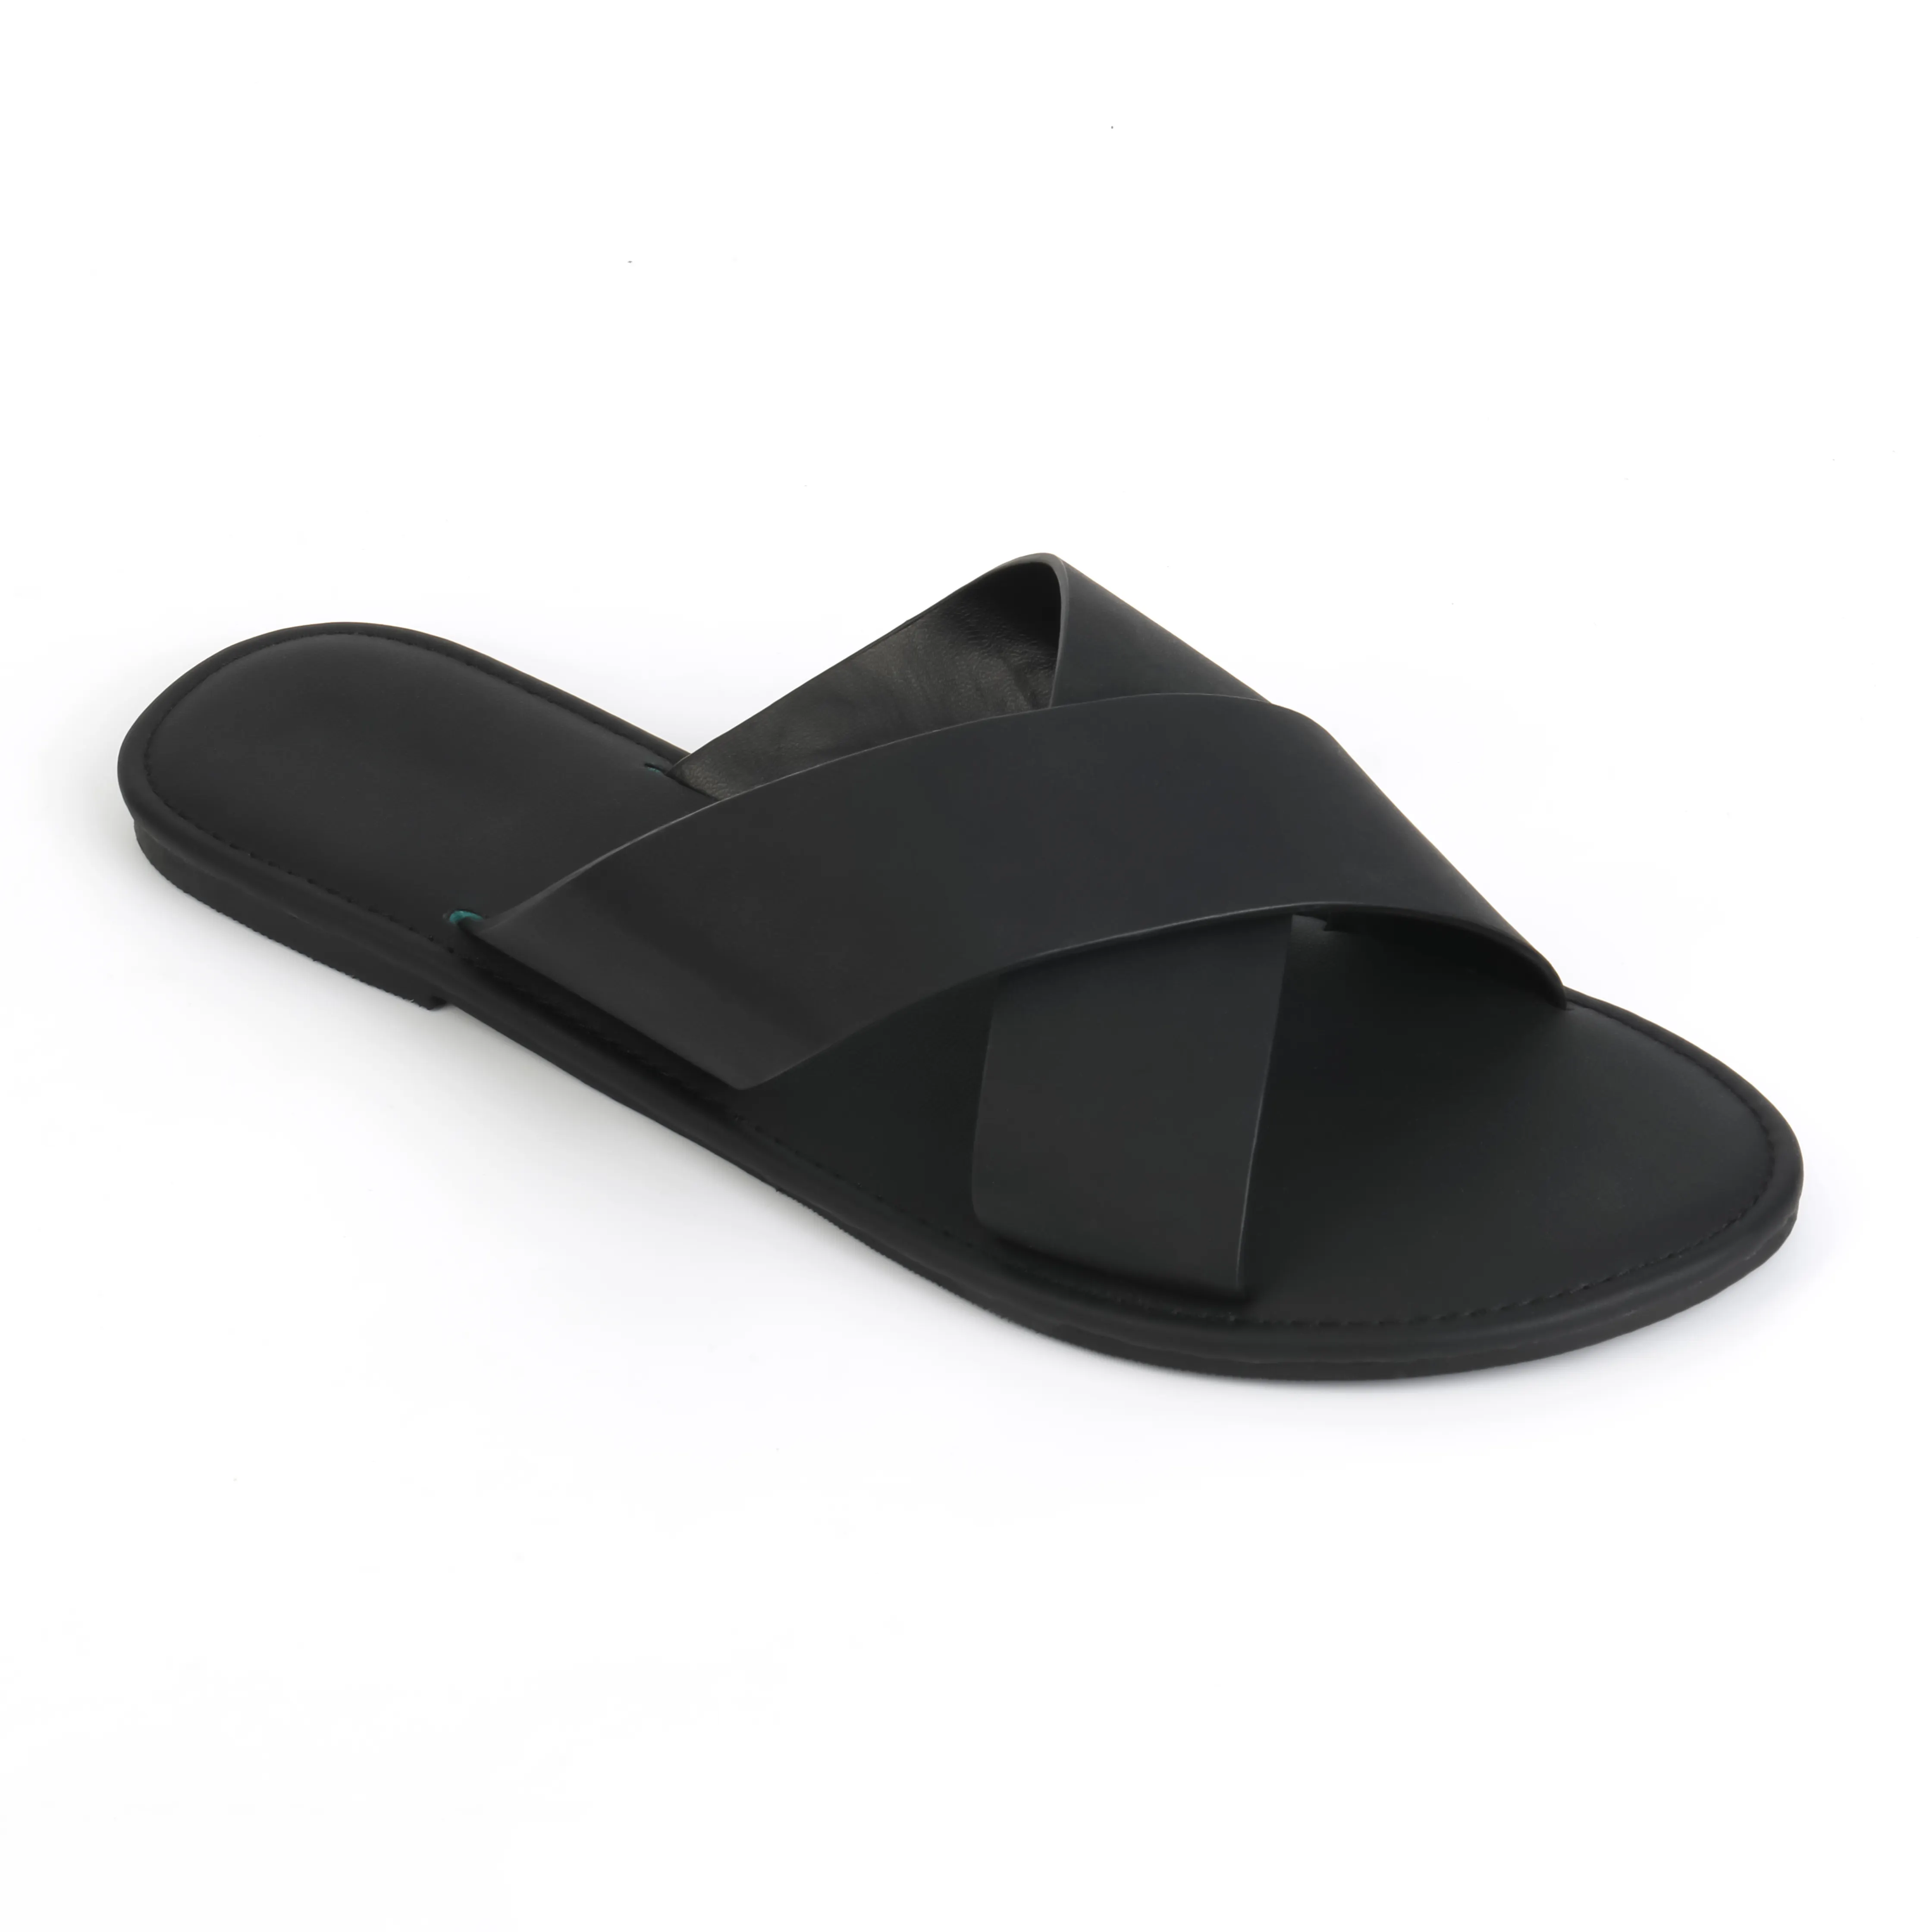 कस्टम लोगो आकस्मिक पार पट्टा खुले पैर की अंगुली काले रंग फ्लैट पु चमड़े के सैंडल चप्पल पुरुषों और महिलाओं के लिए निर्माता थोक